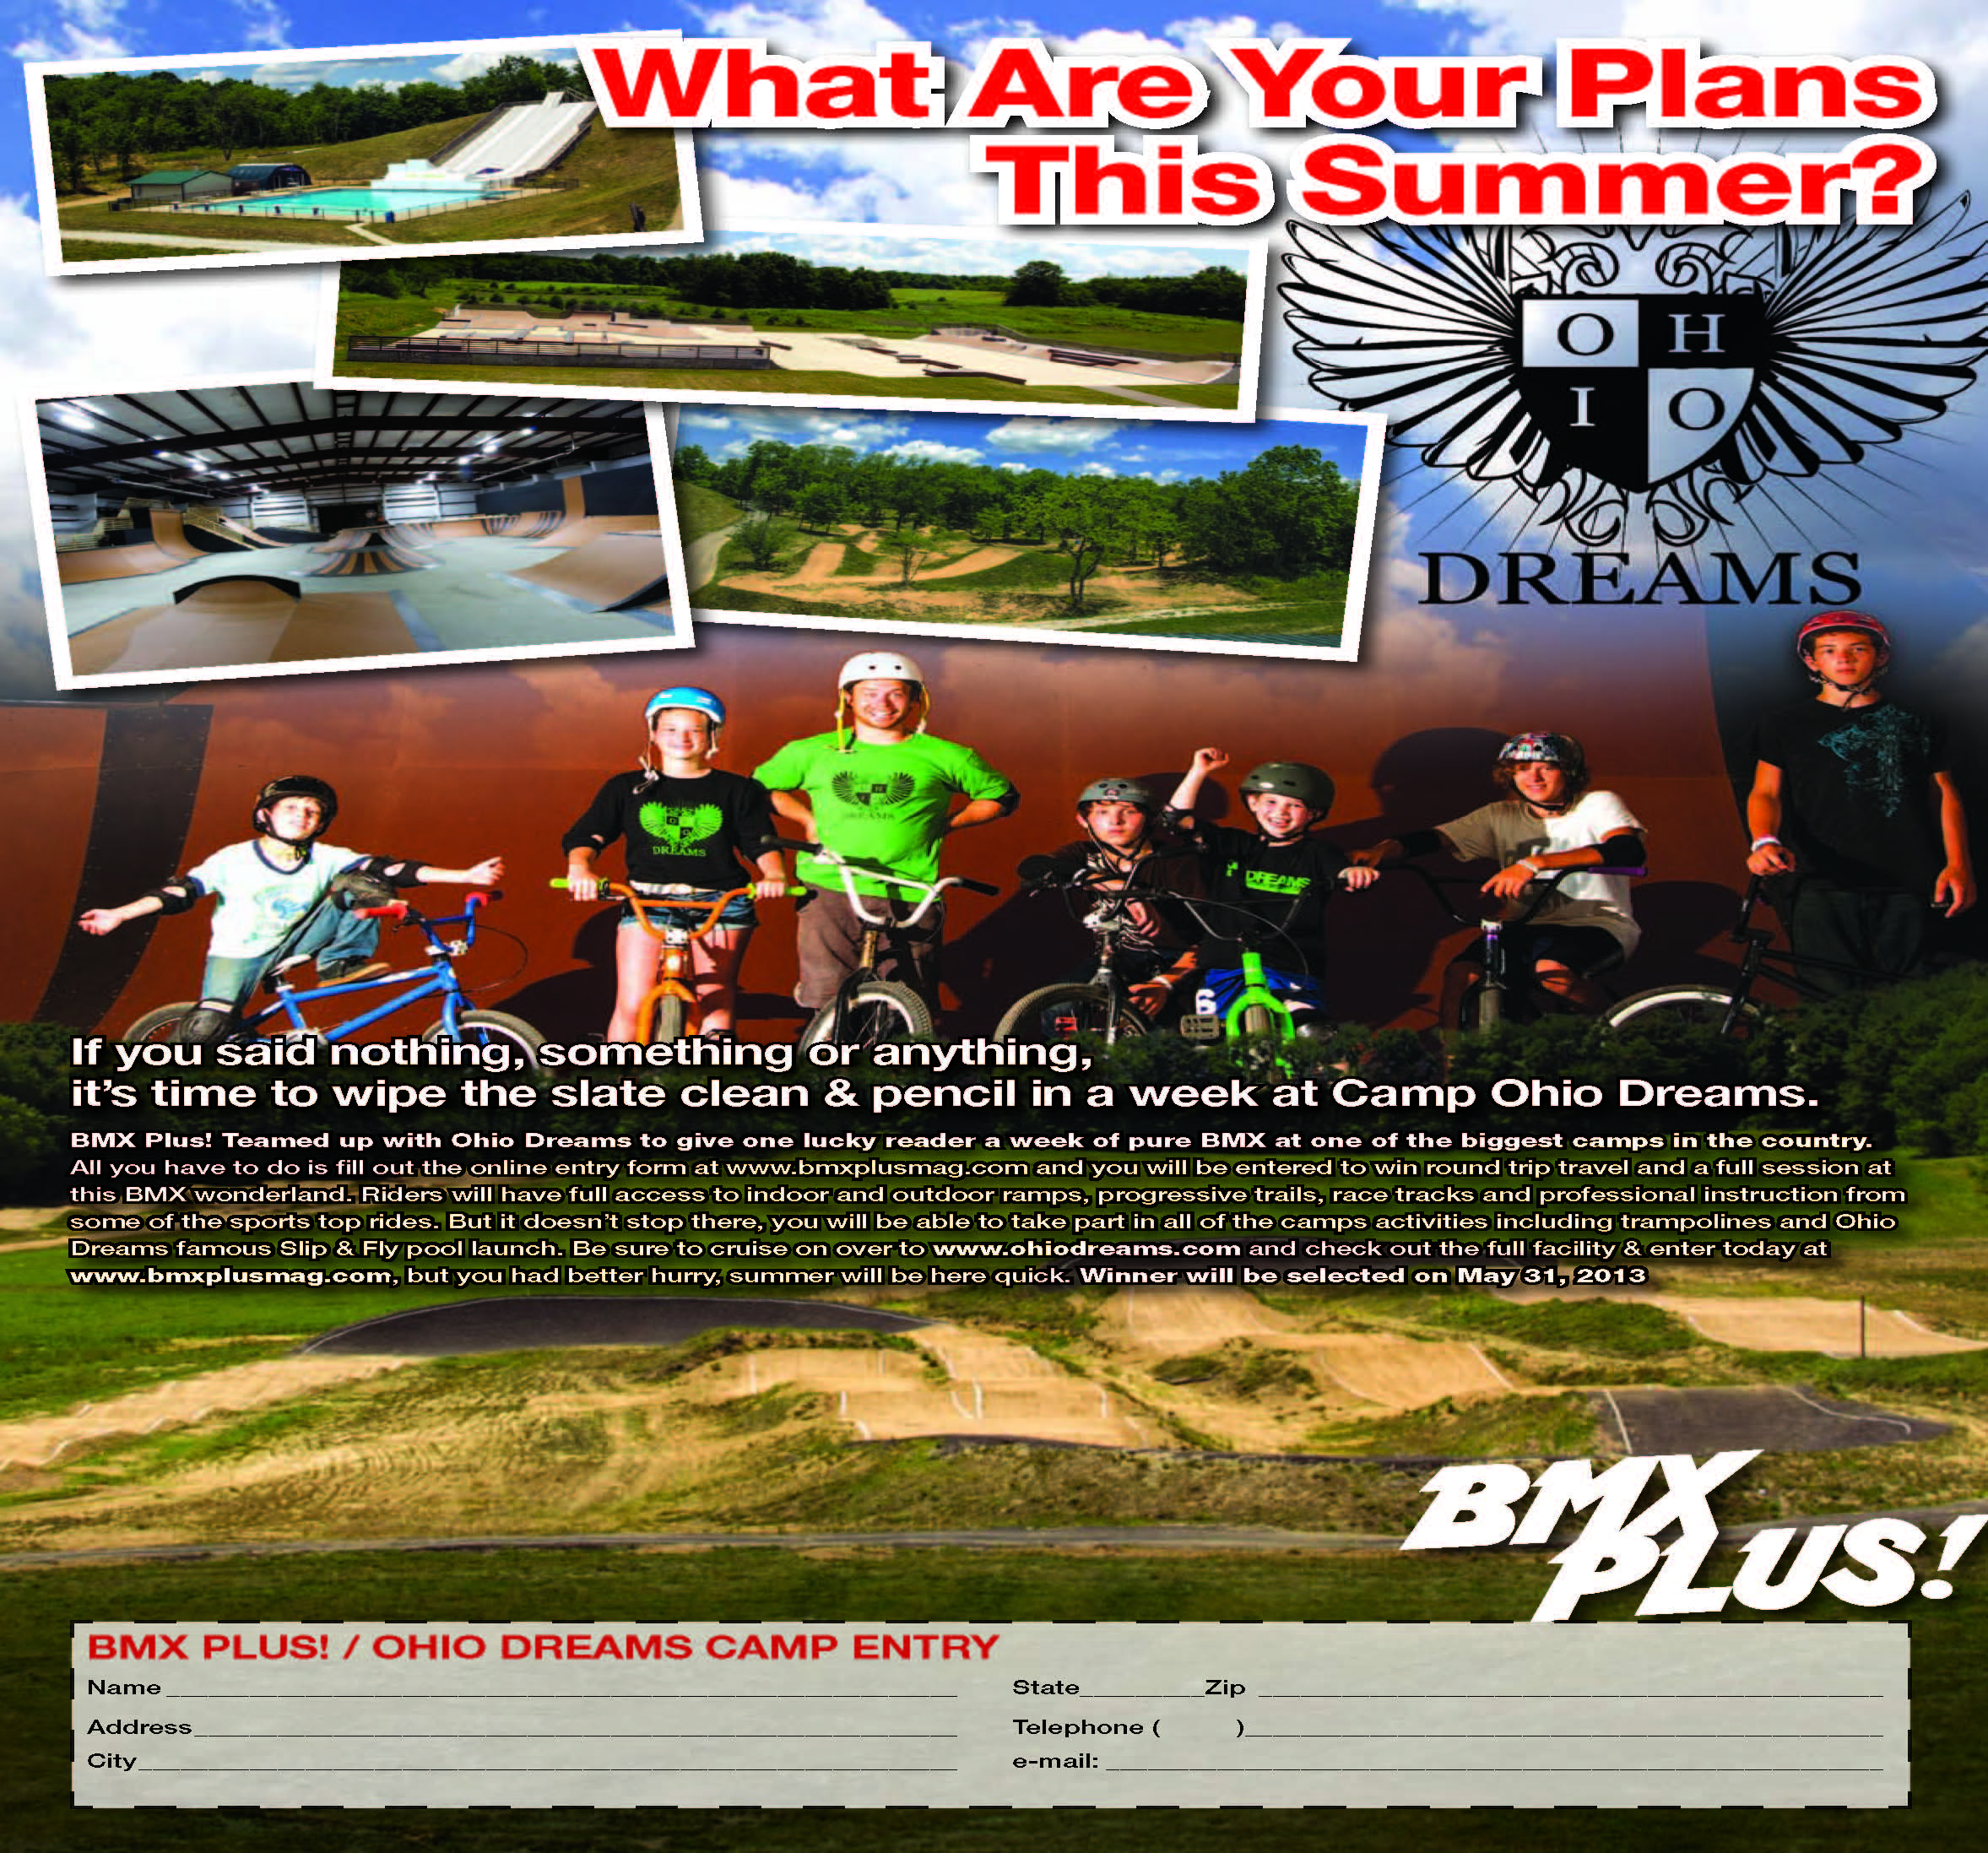 BMX Plus Ohio Dreas